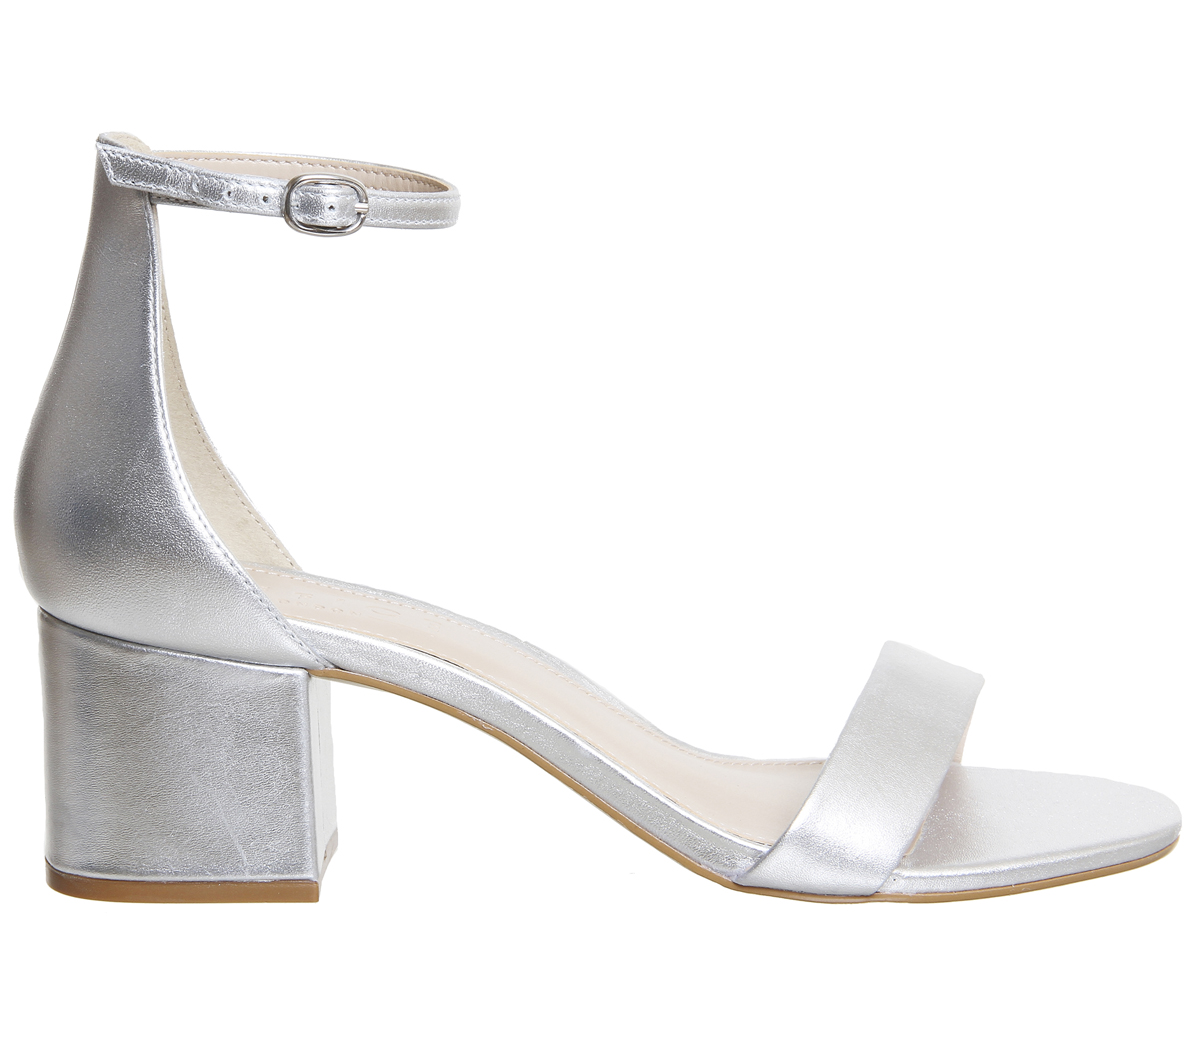 silver low heel sandals uk